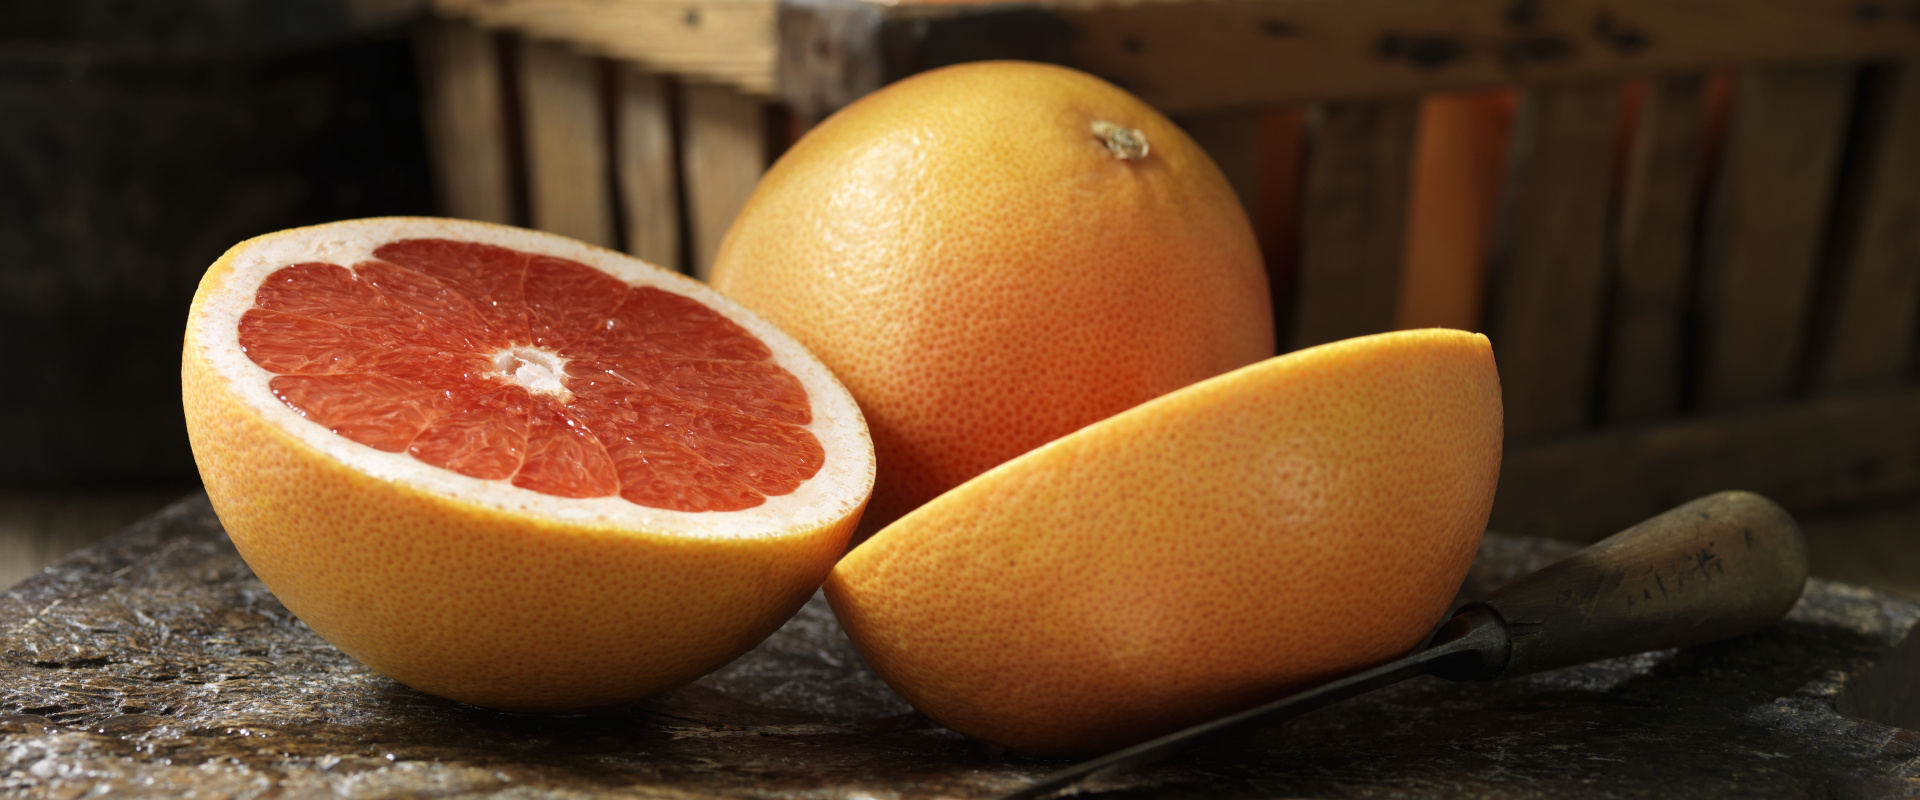 grapefruit cover